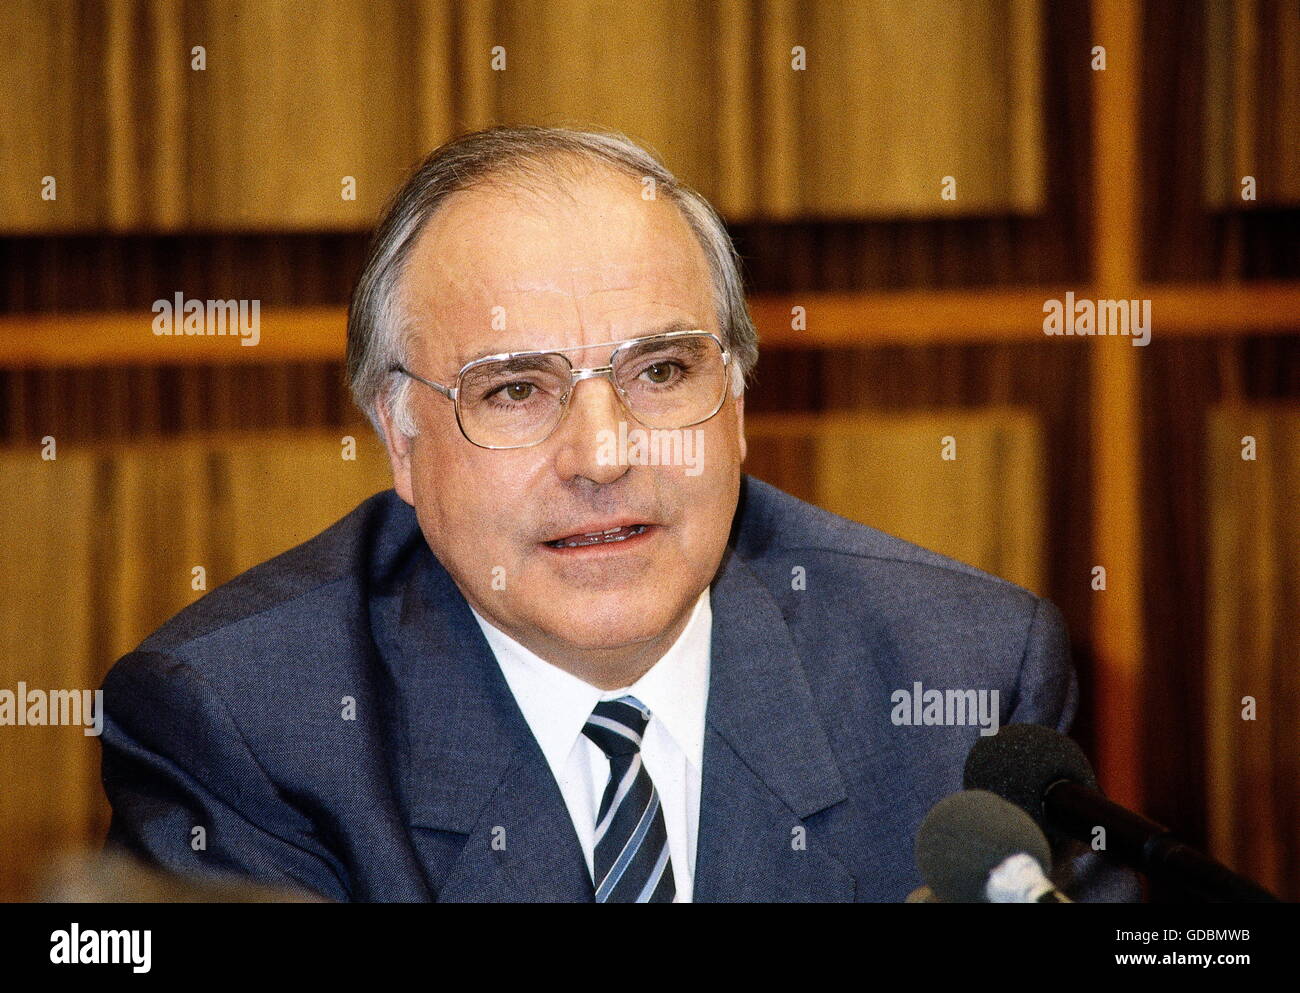 Kohl, Helmut, * 3.4.1930, deutscher Politiker (CDU), Bundeskanzler von Deutschland 1982-1998, Porträt, 1980er Jahre Stockfoto